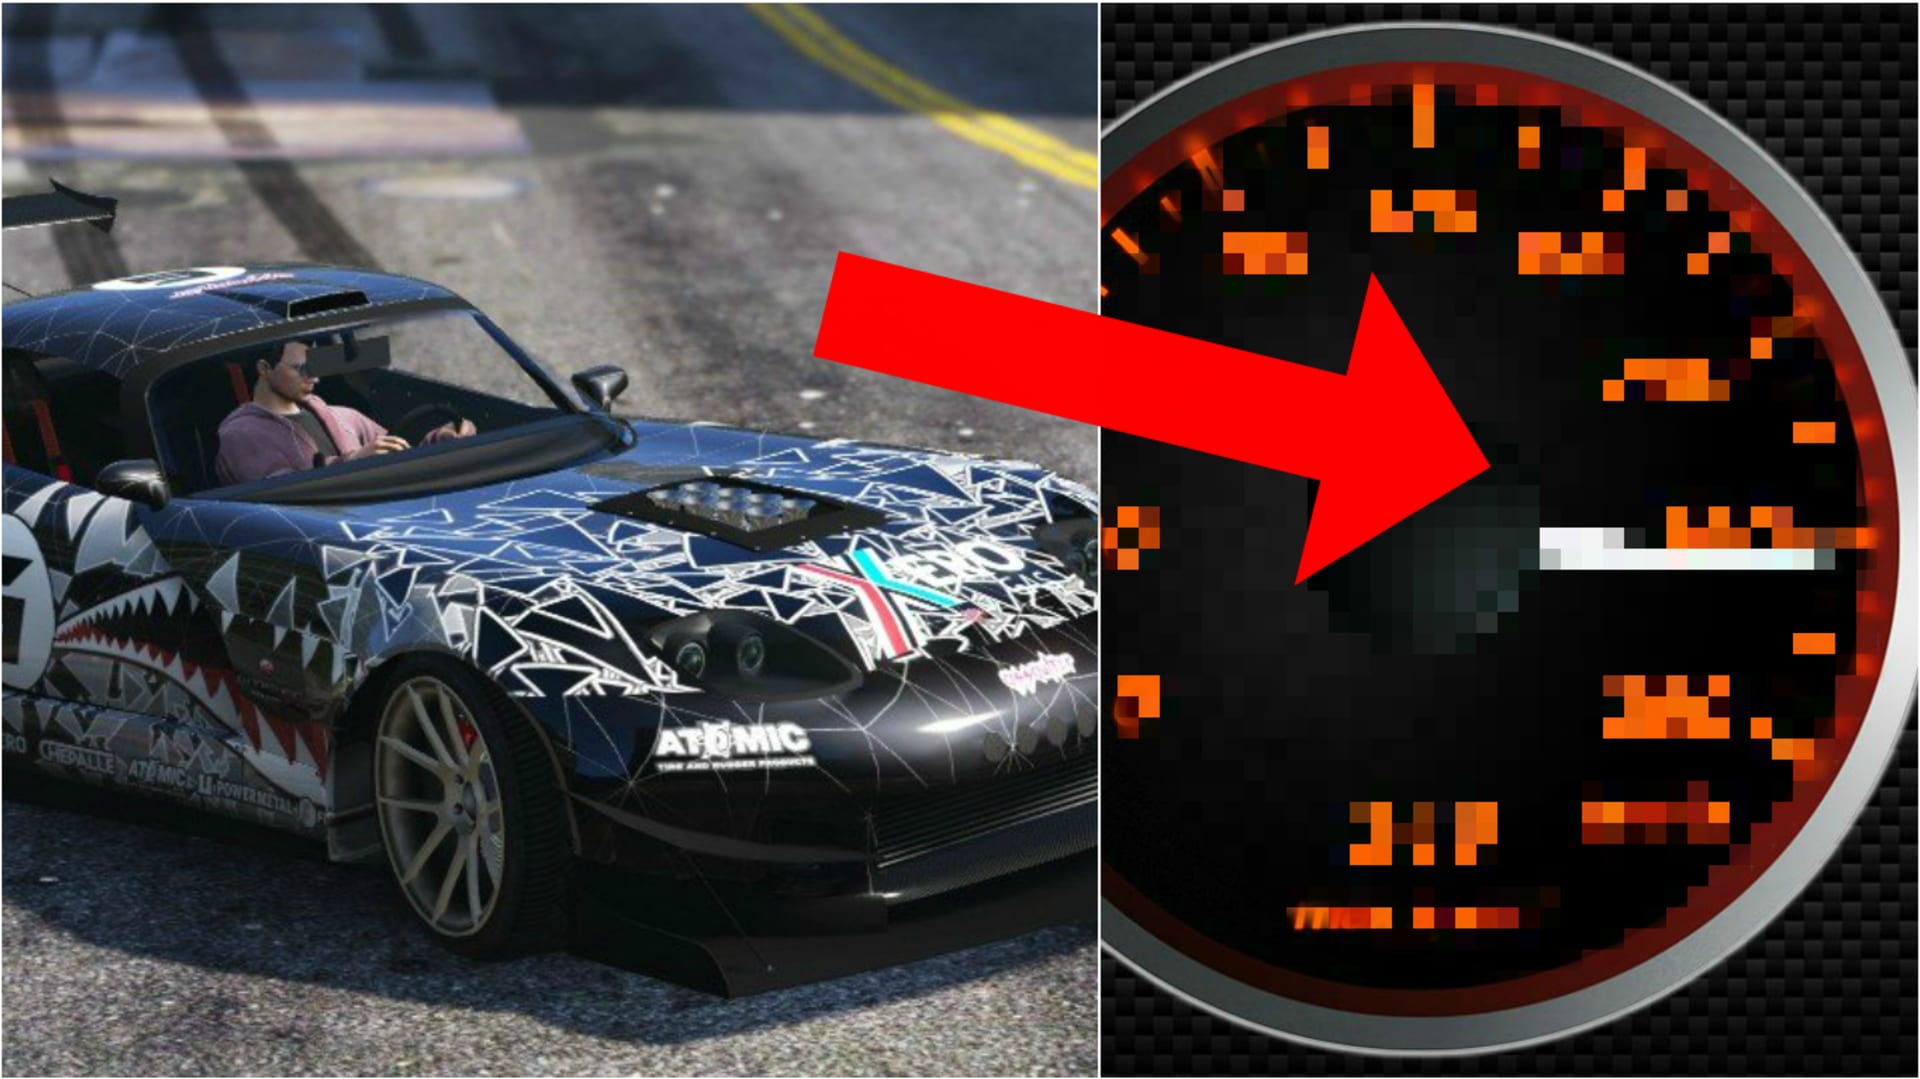 Jak rychle jezdí auta v GTA V?